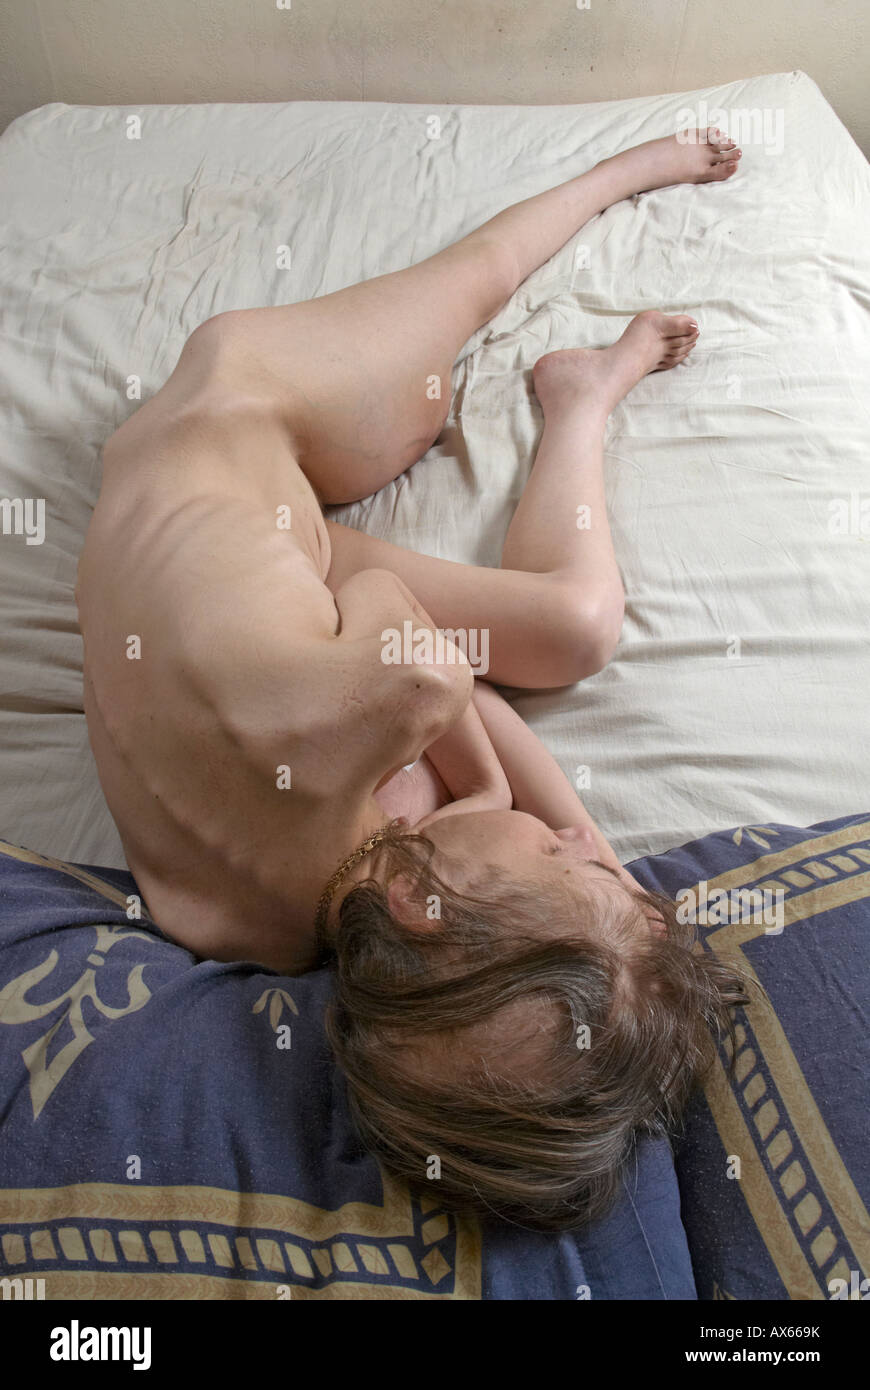 Nackte Kranke Dame zusammengerollt auf dem Bett mit linken Bein mit hochwertigem Weichteilsarkomen ausgestreckt - Haarausfall durch Chemotherapie Stockfoto